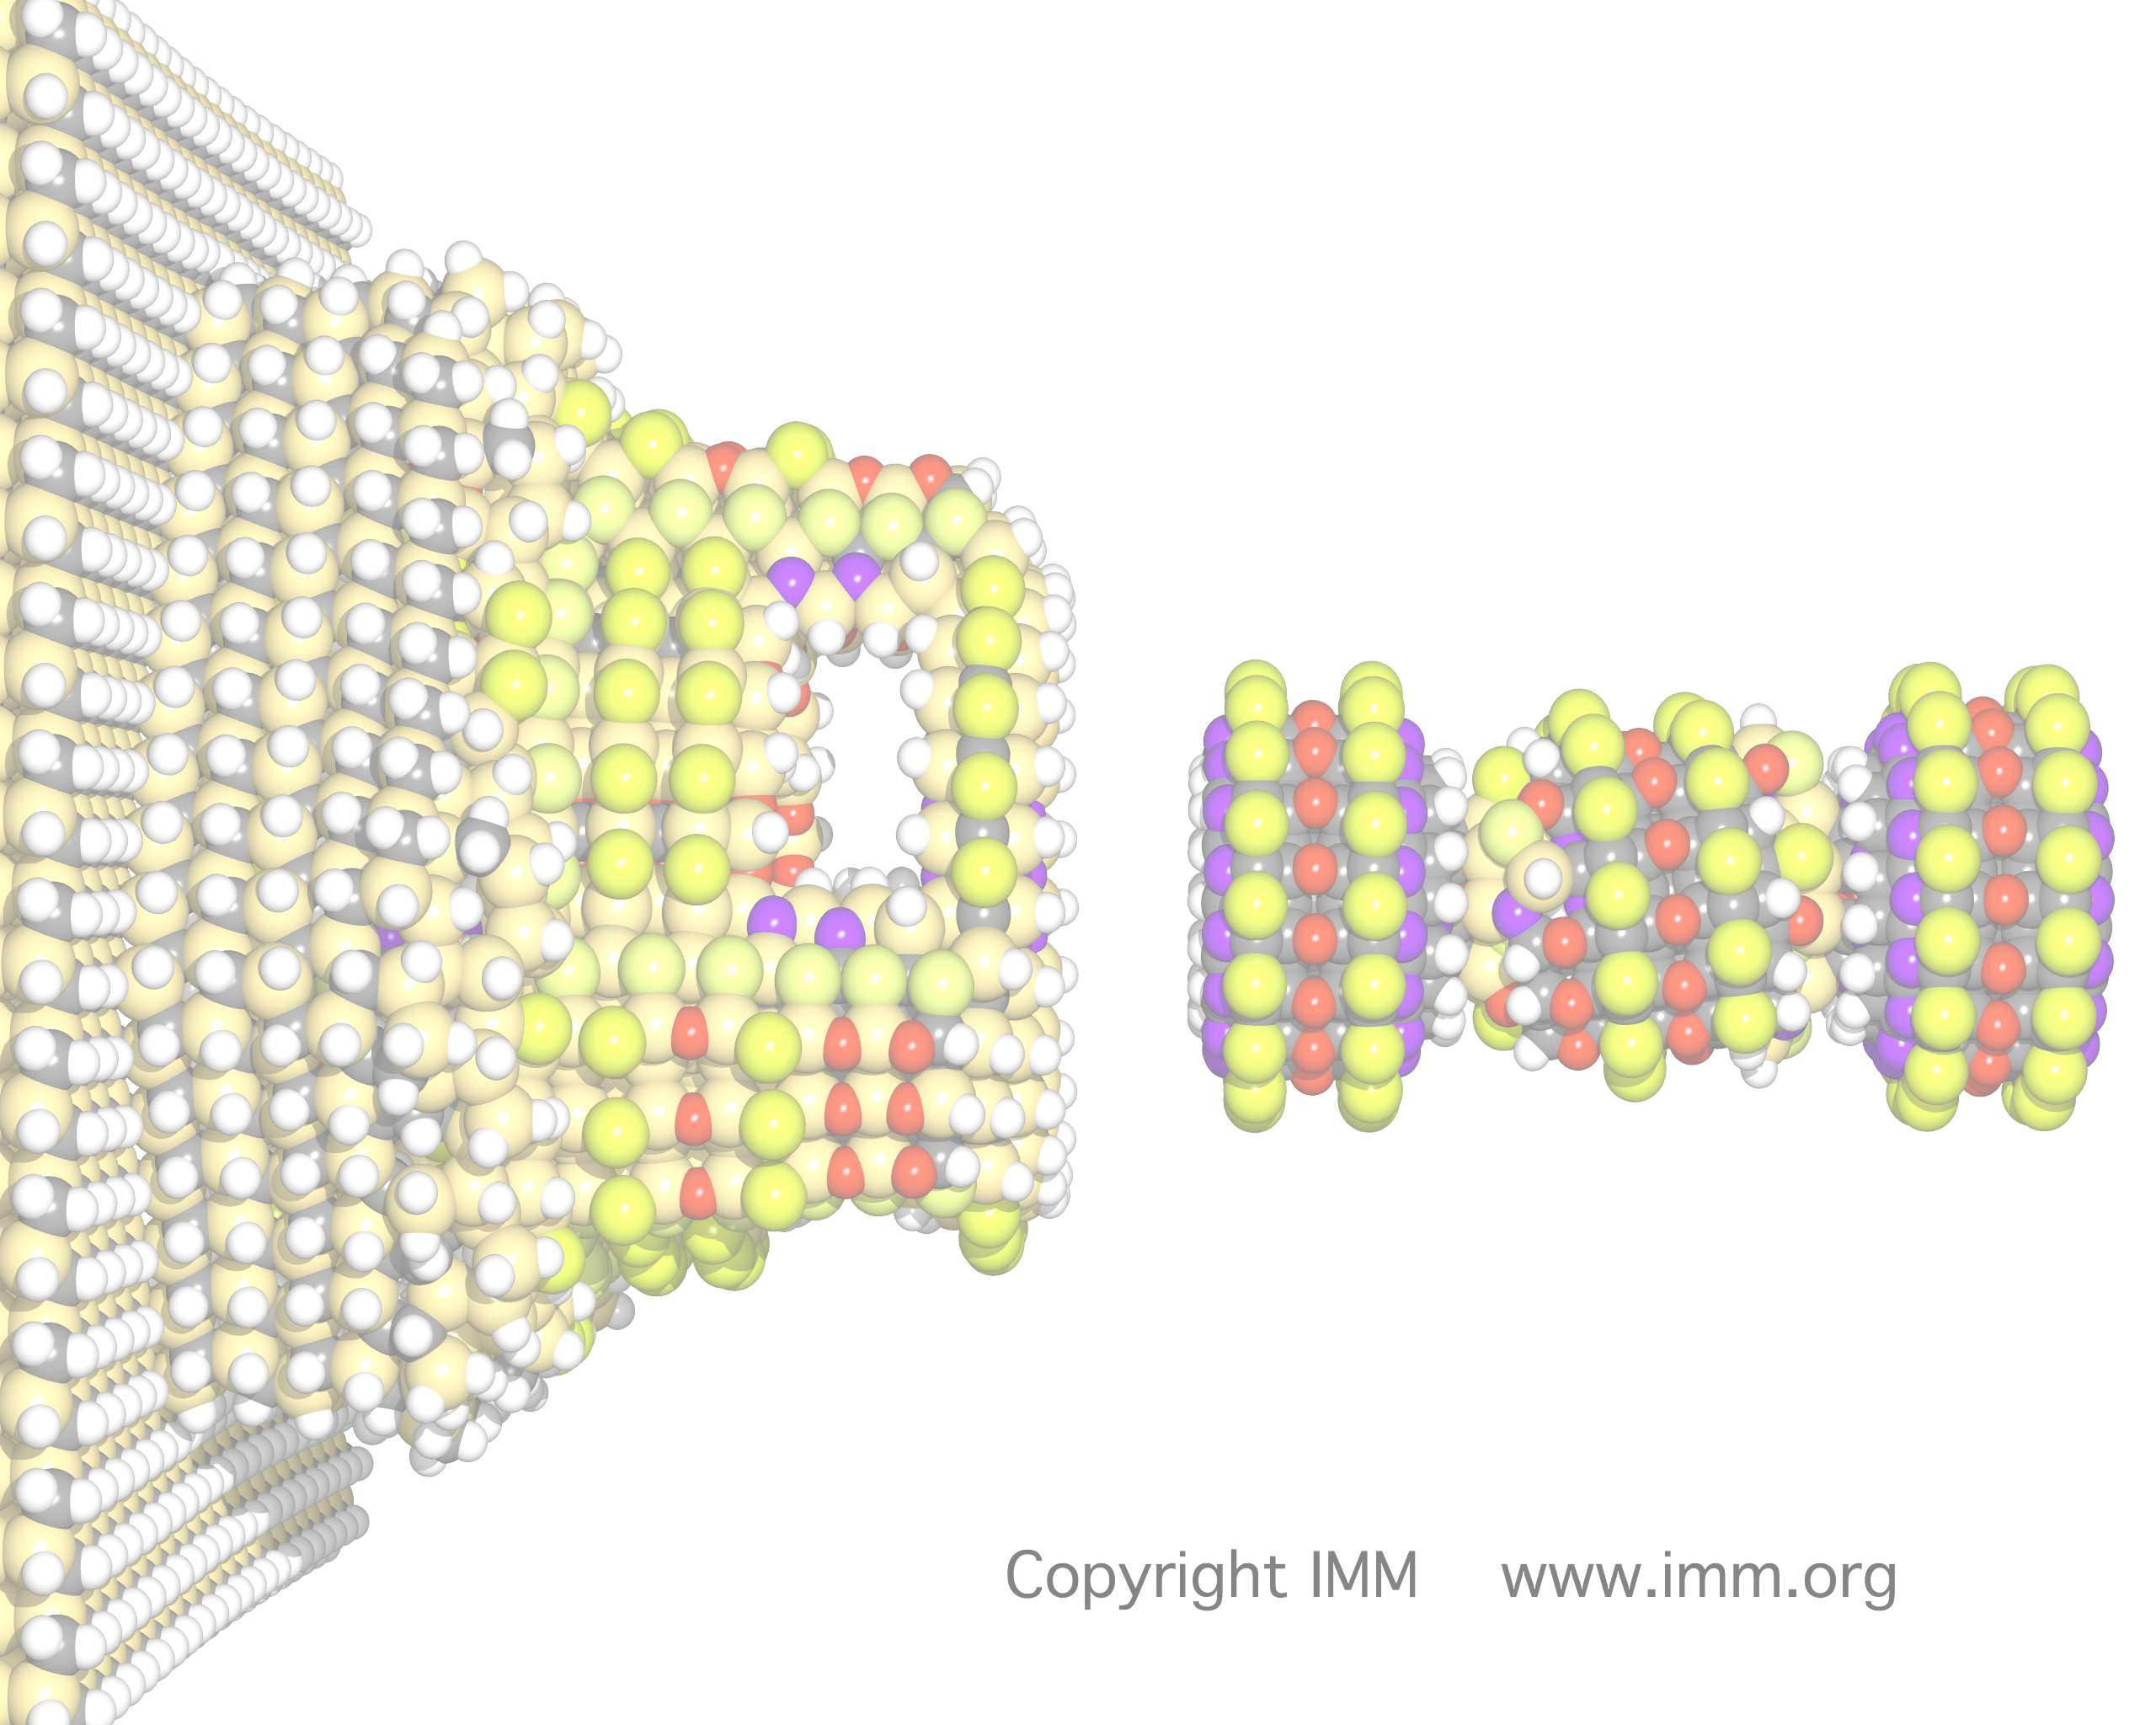 Nanomotorky 4. 7. 2002 vědci z univerzity v Mnichově uvedli do chodu mechanismus sestávající z jediné molekuly, roztáčený světlem.